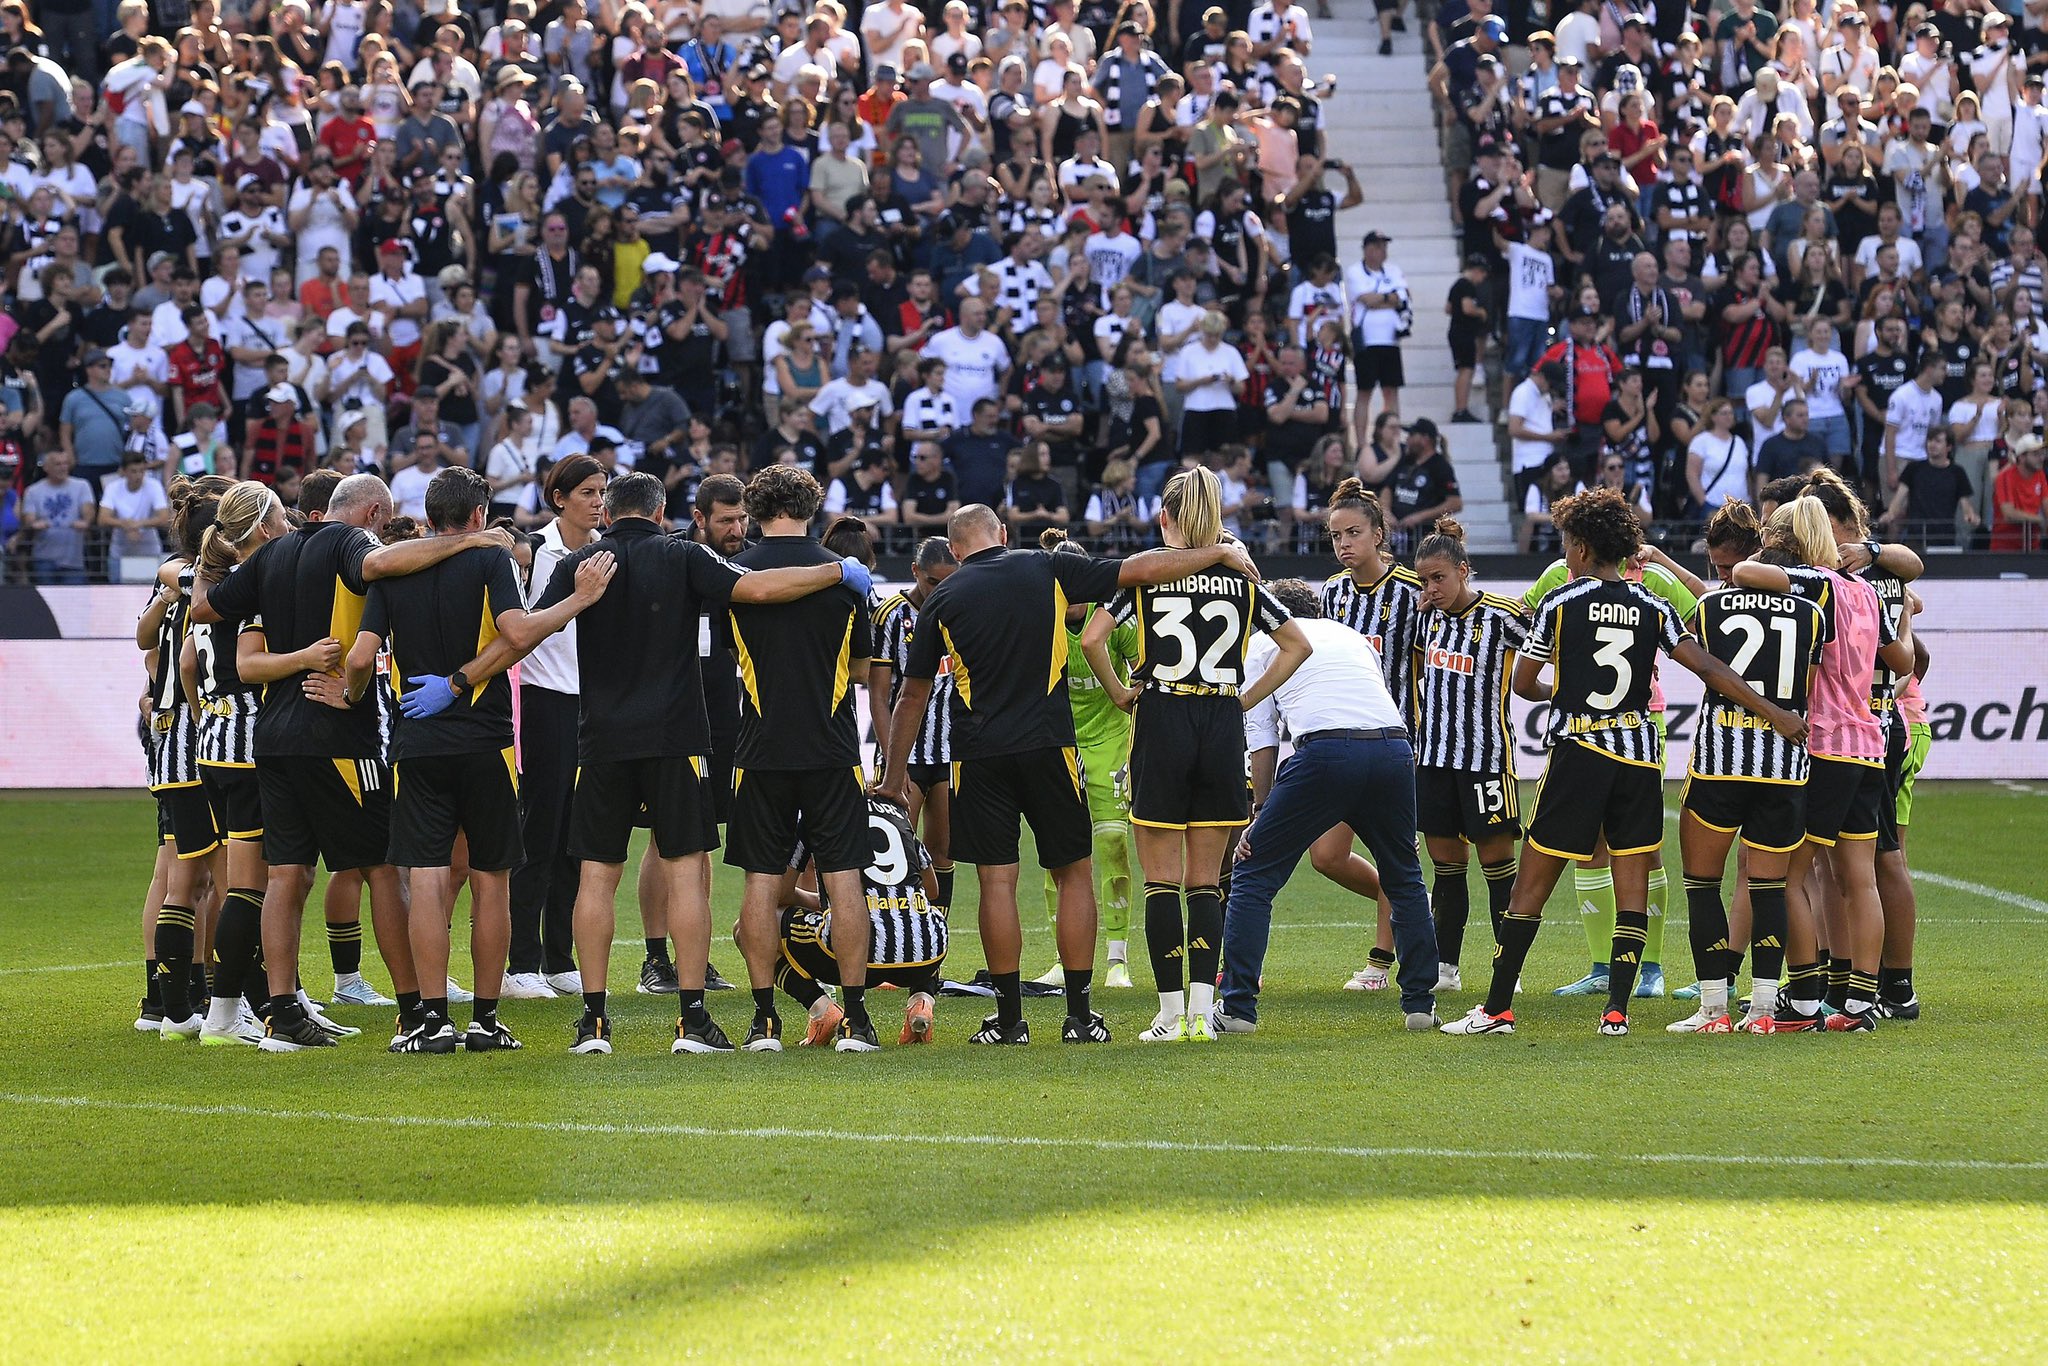 Les joueuses de la Juventus ont cédé à Frankfurt (photo Juventus)